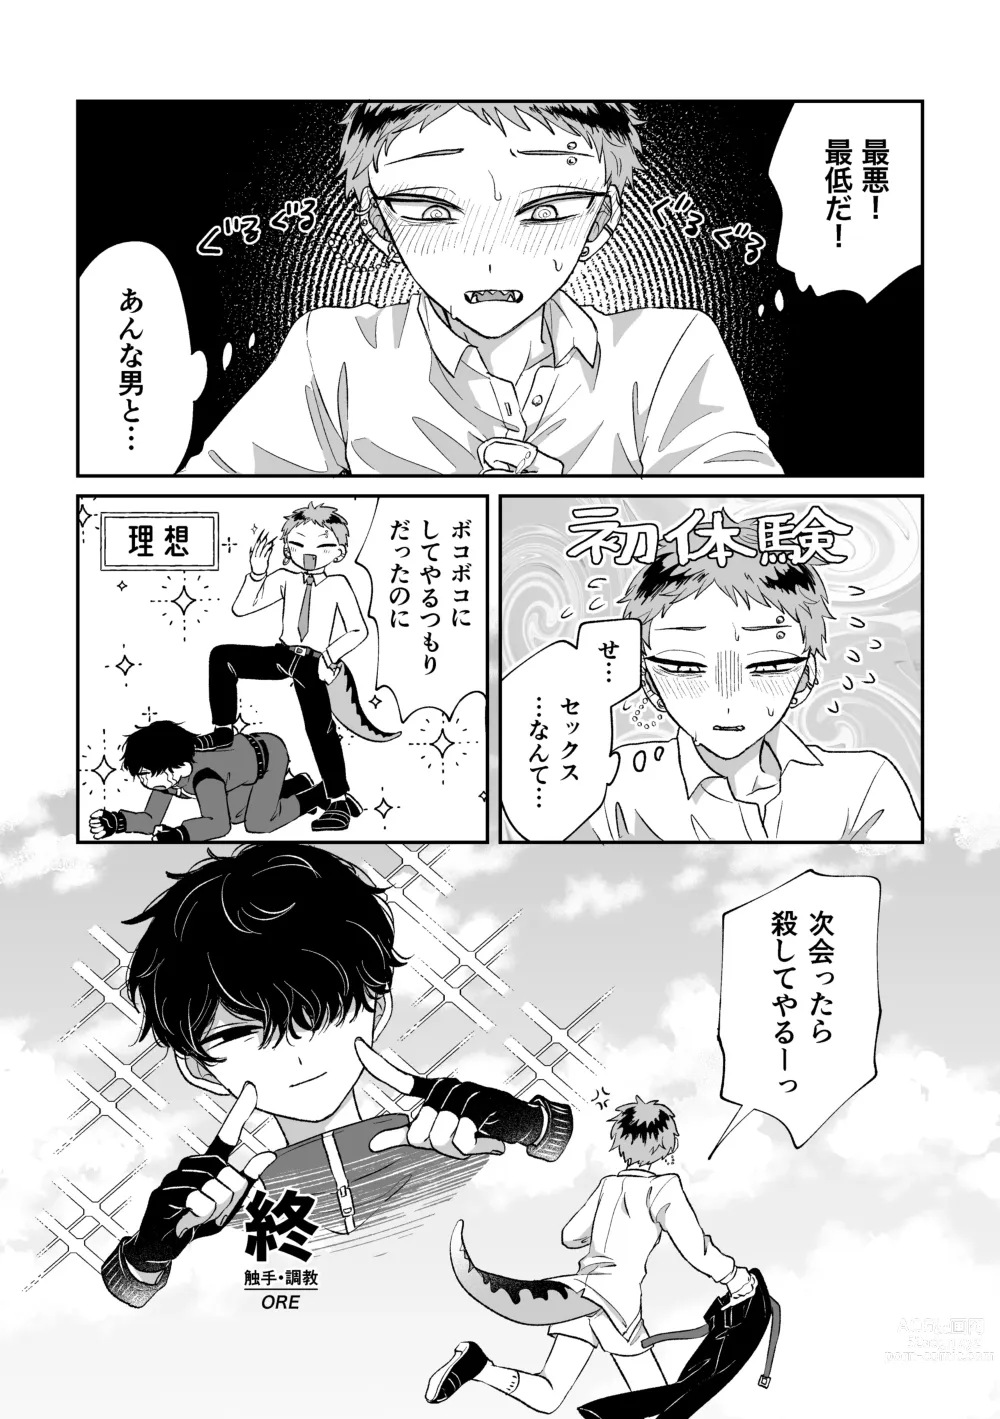 Page 31 of doujinshi Warui kedo Kore Ero Manga nanda yo ne